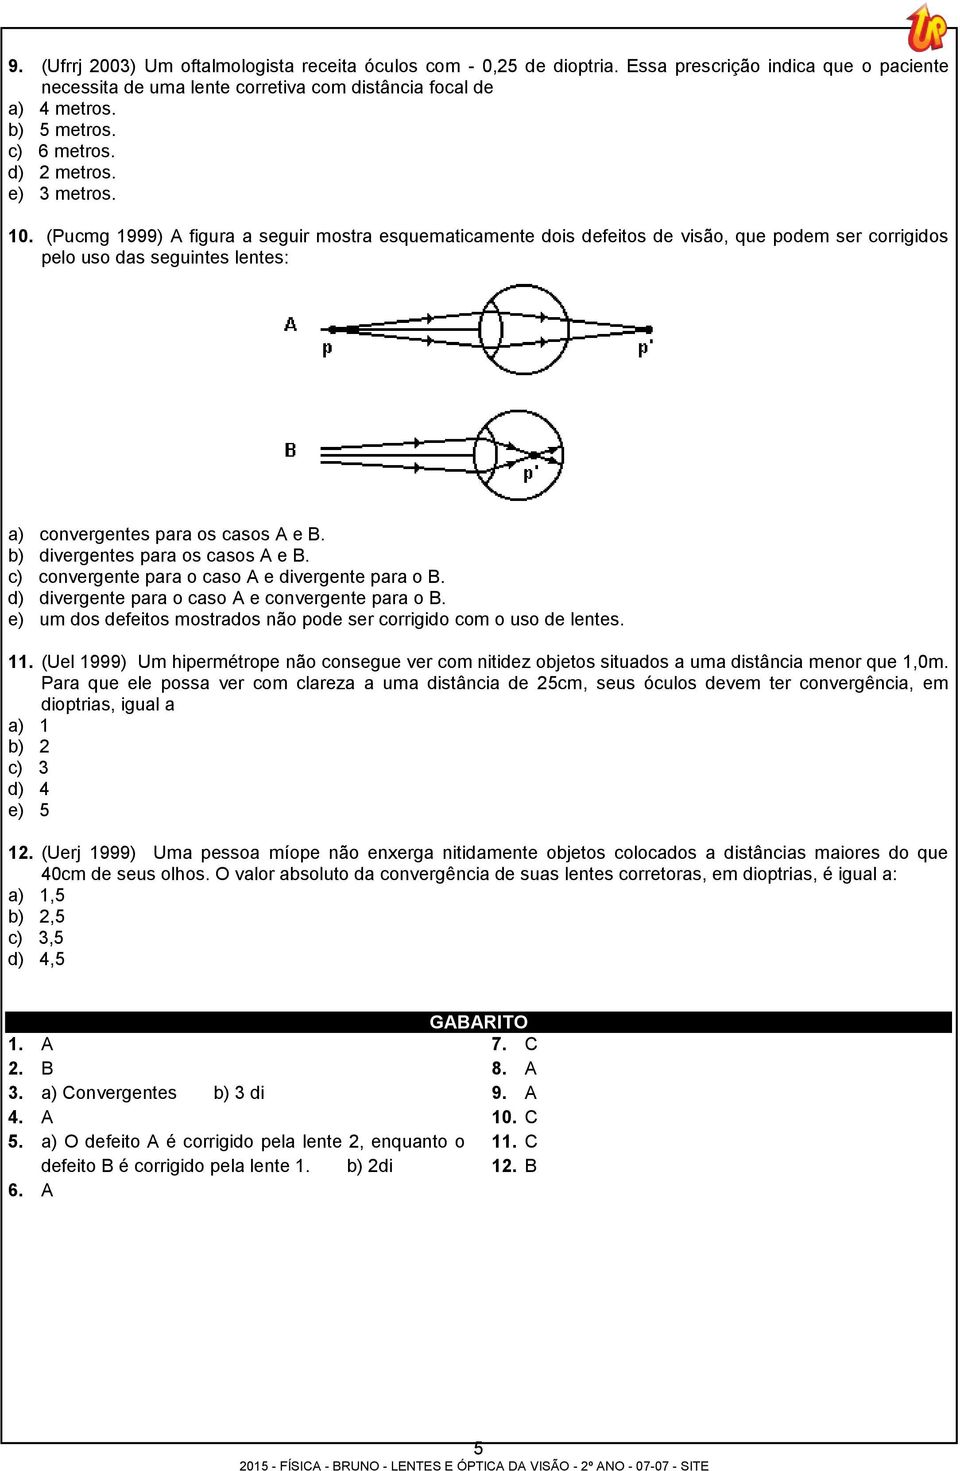 (Pucmg 1999) A figura a seguir mostra esquematicamente dois defeitos de visão, que podem ser corrigidos pelo uso das seguintes lentes: a) convergentes para os casos A e B.